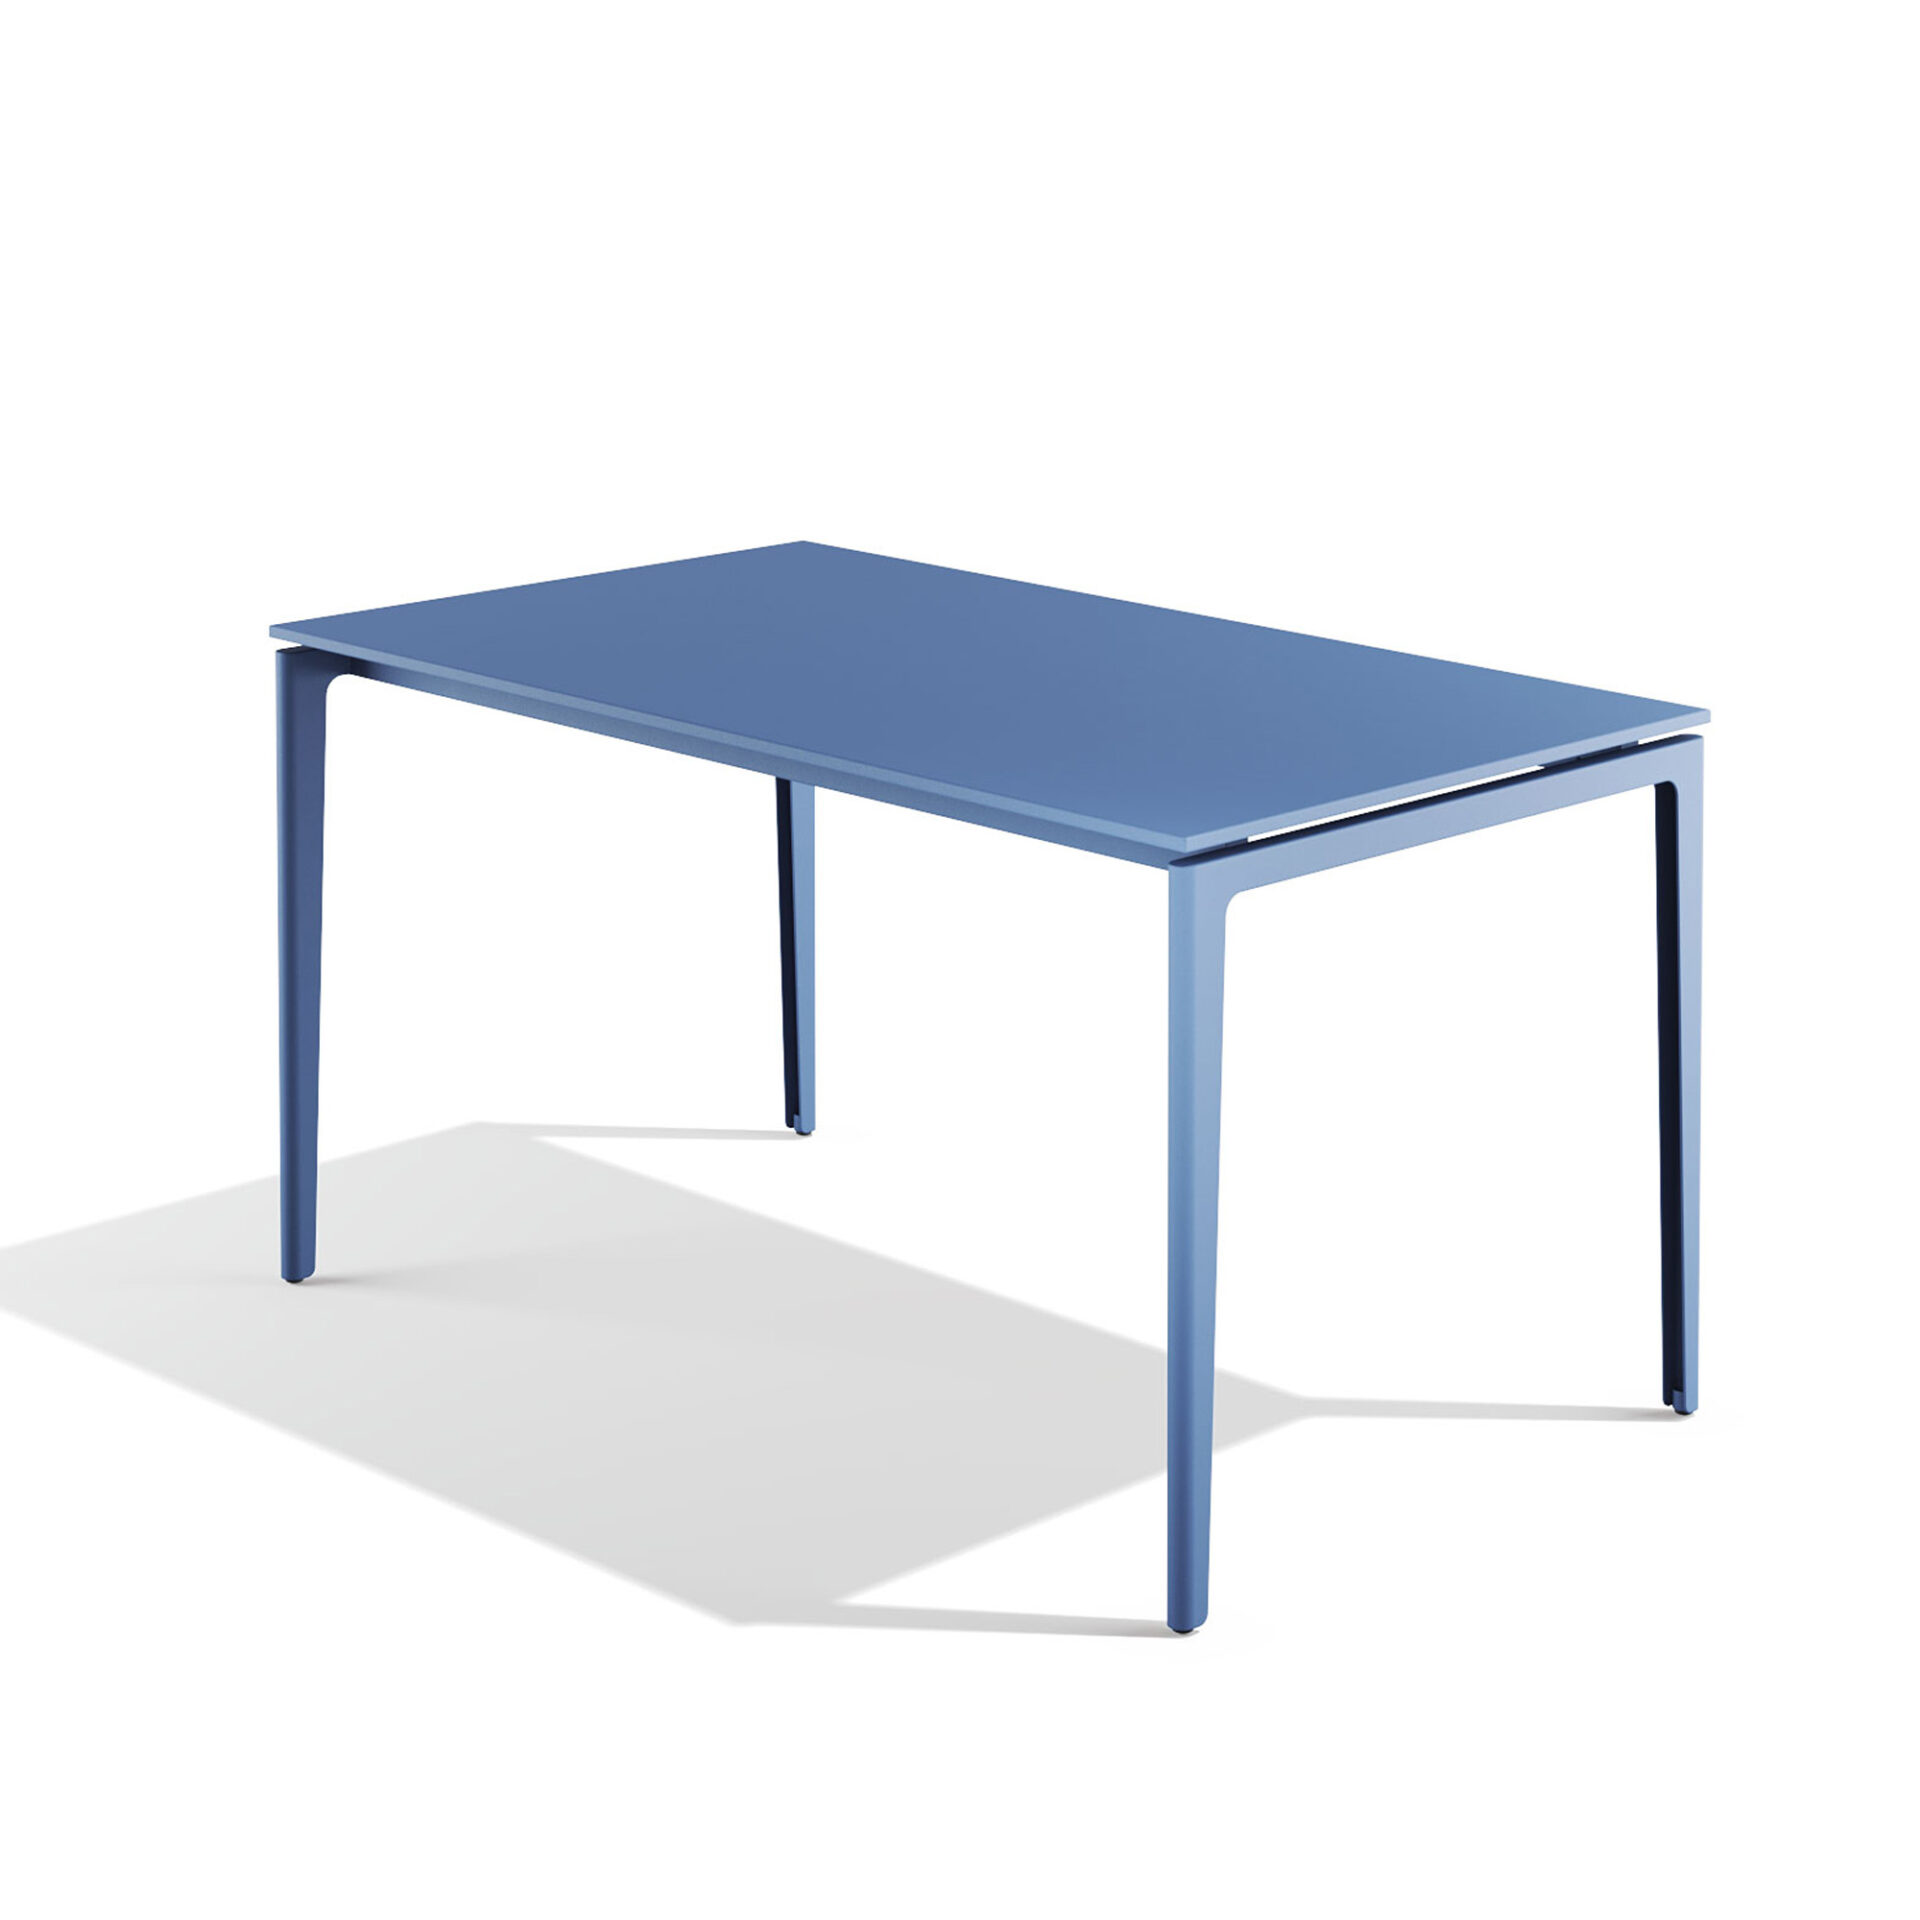 Gao rectangular table 140